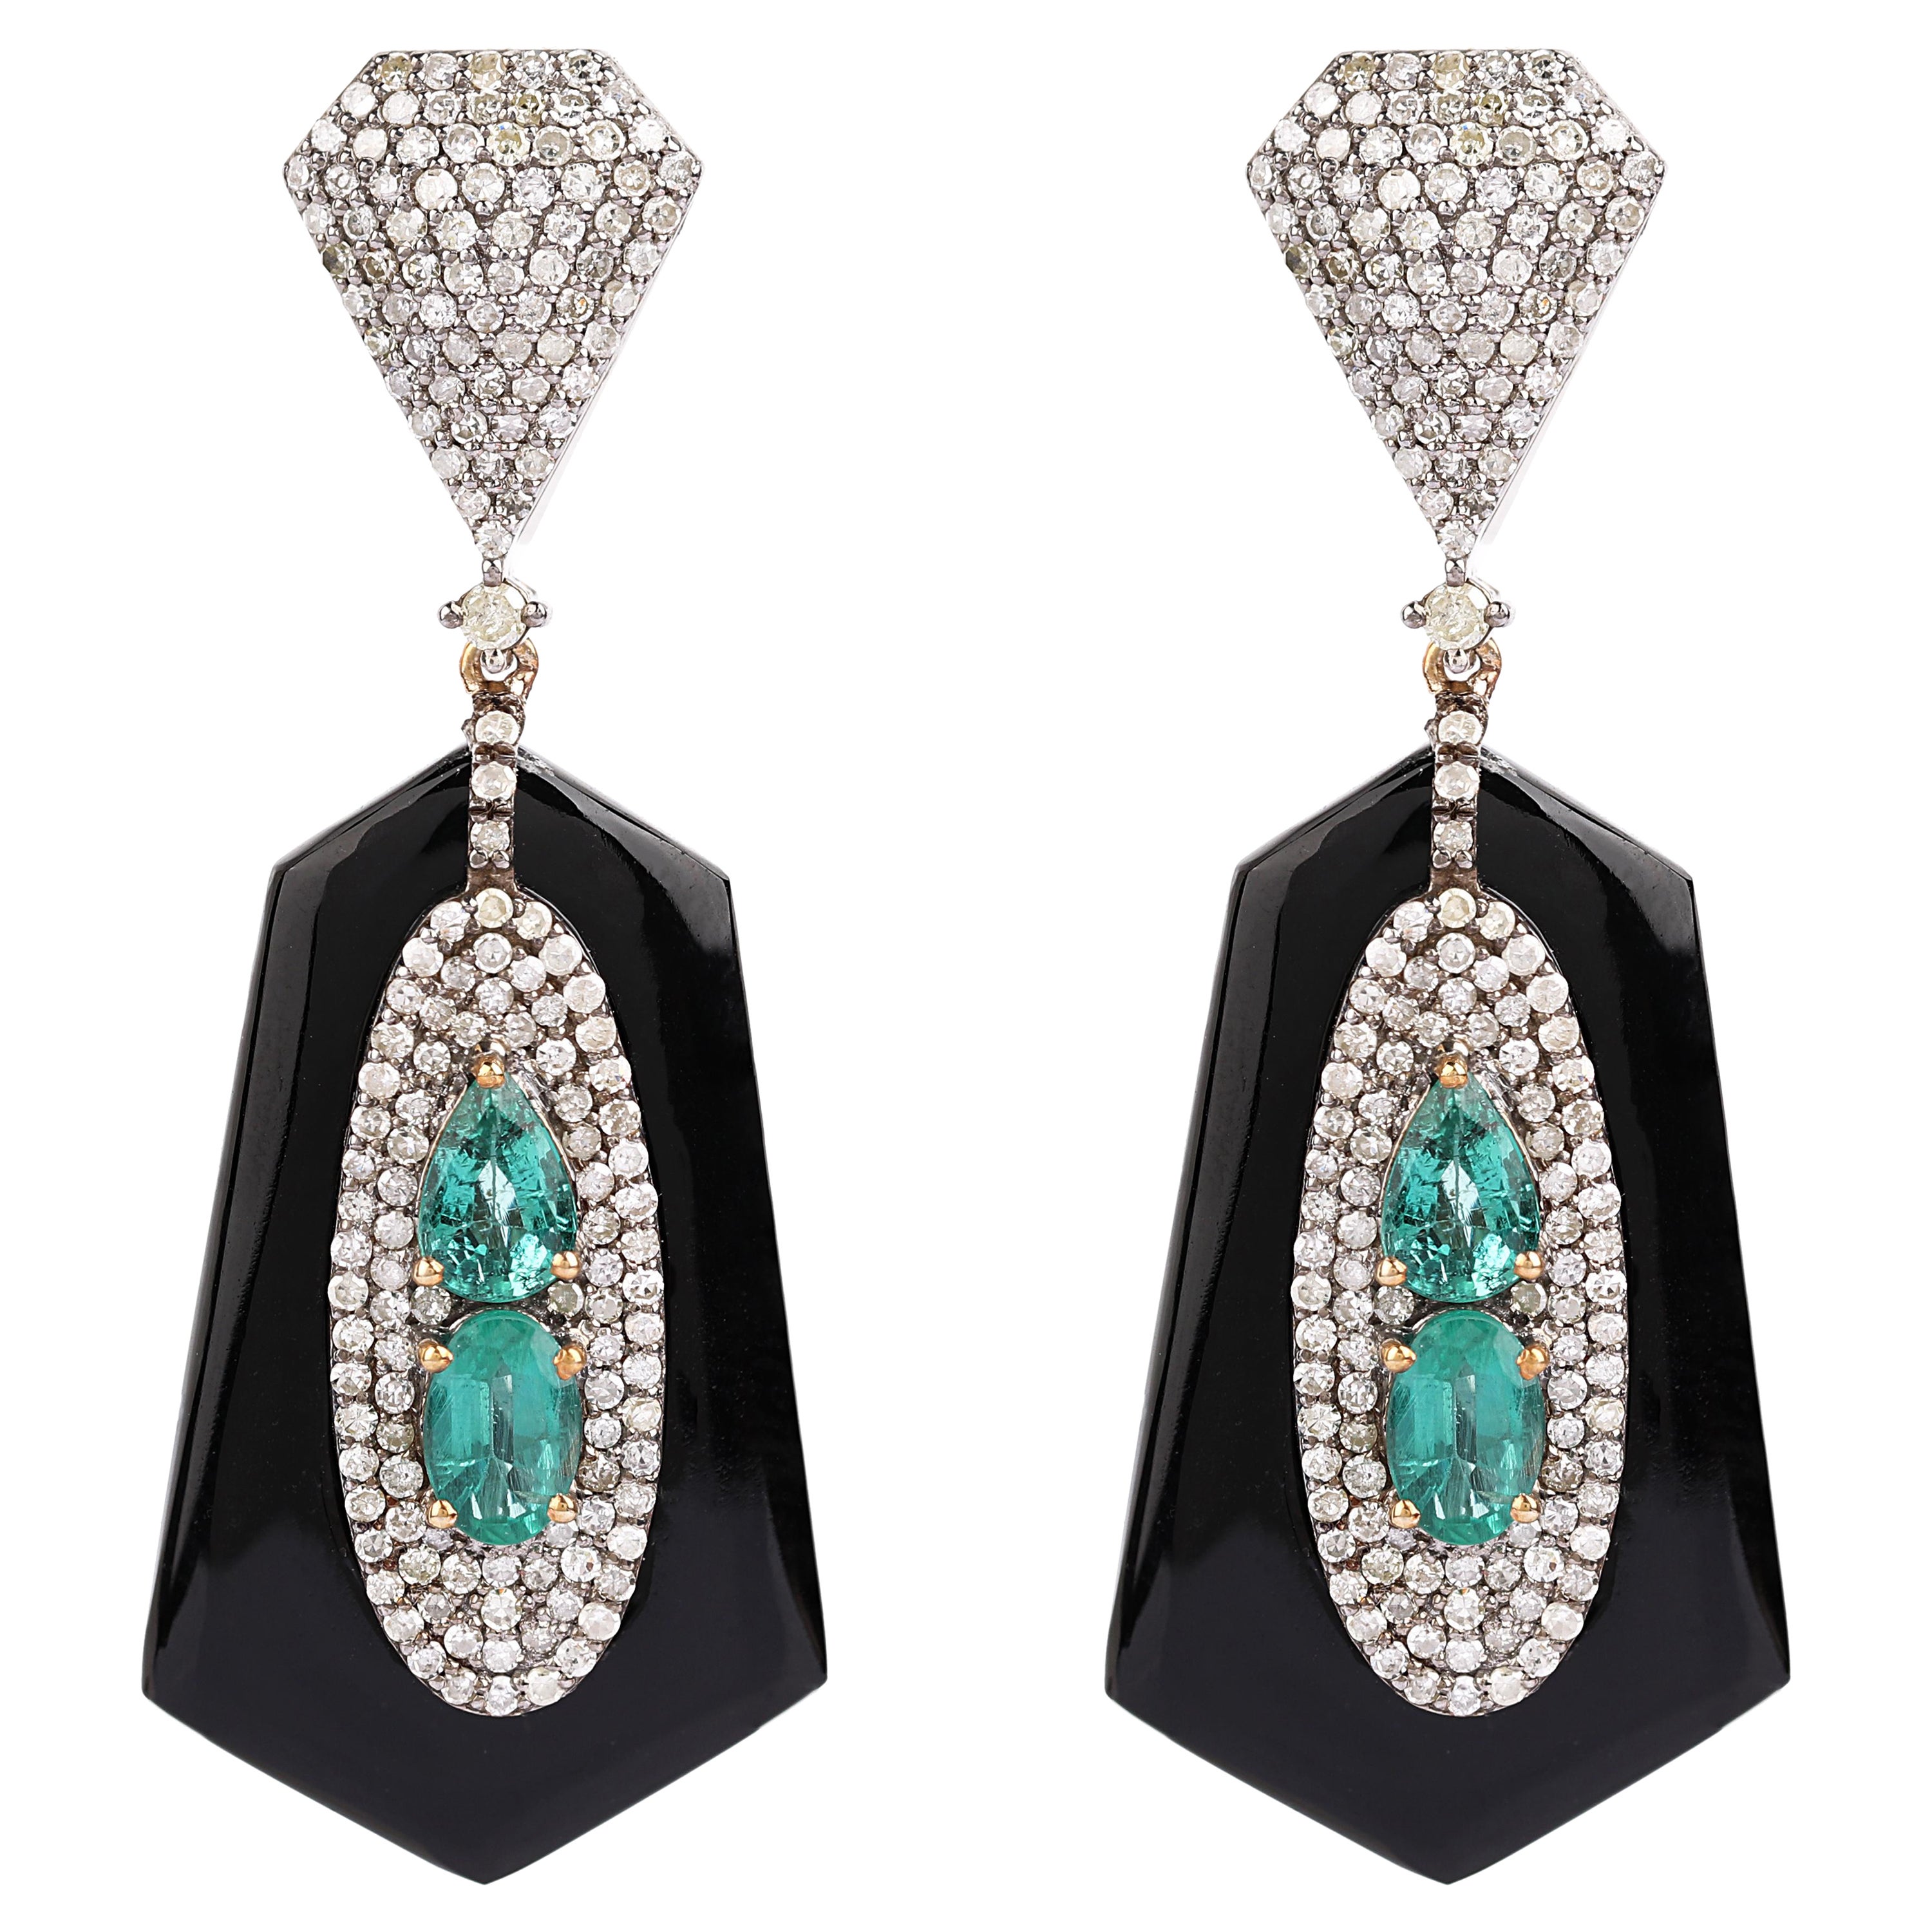 Ohrgehänge im Art-Déco-Stil mit 17,00 Karat Diamanten, Smaragden und schwarzem Onyx